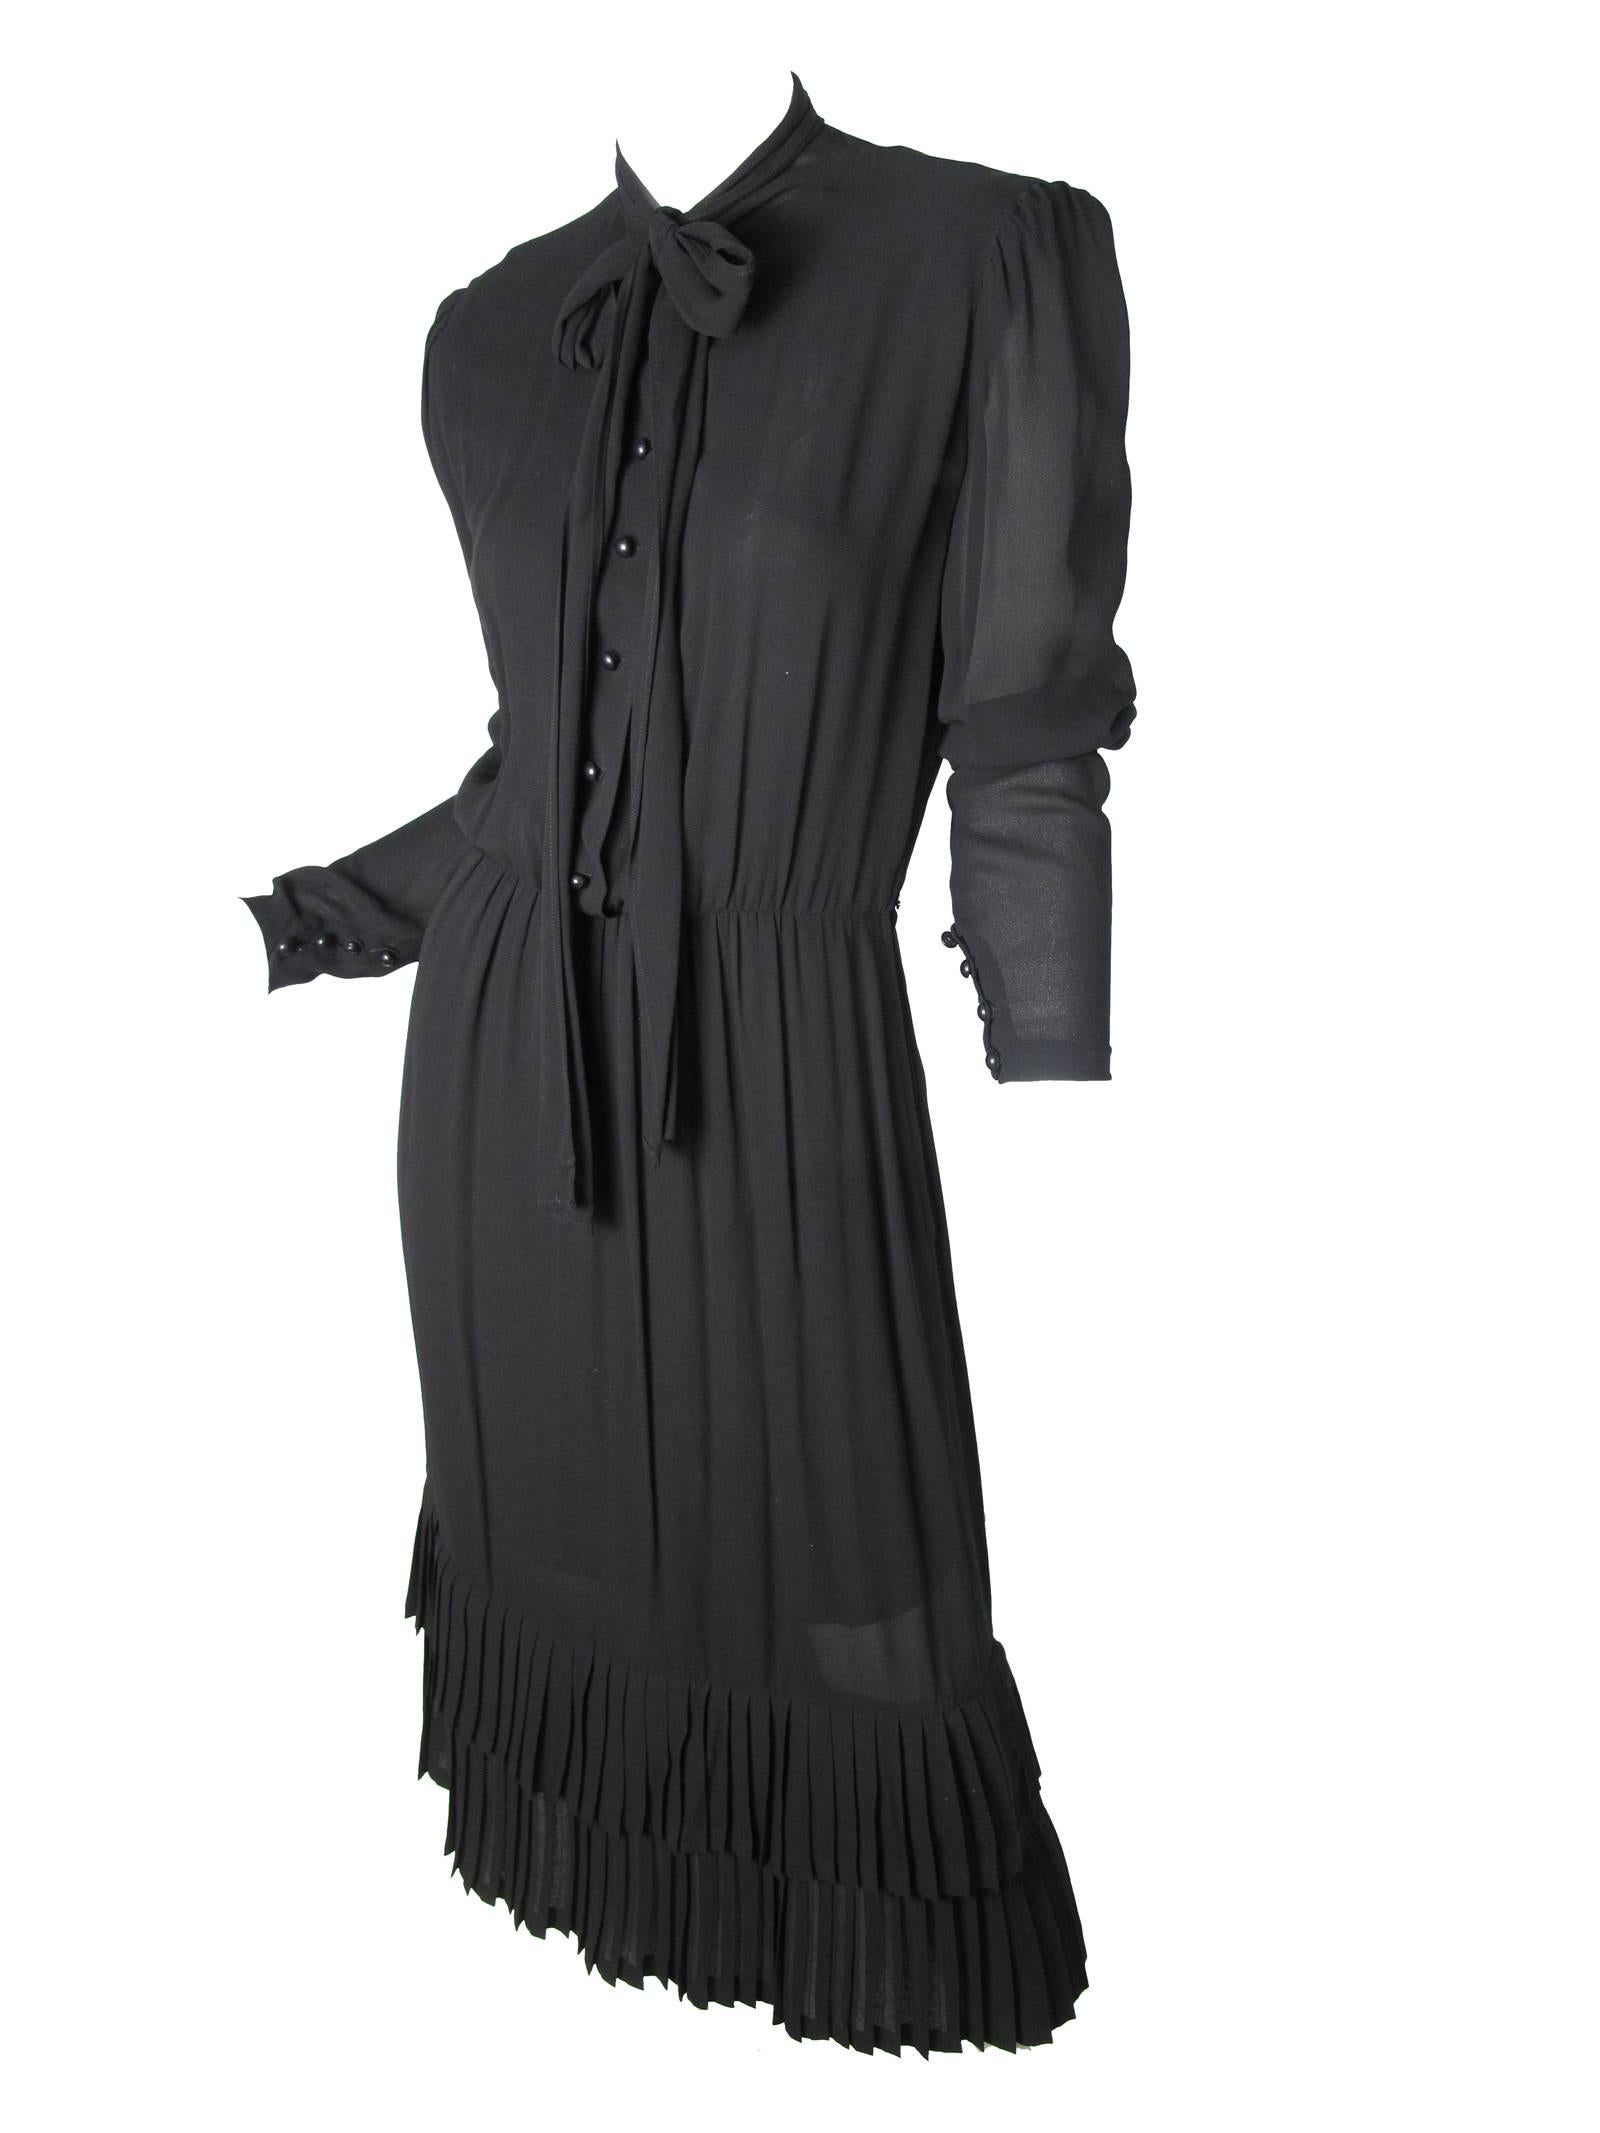 Schwarzes Seiden-Crêpe-Kleid von Scherzer mit Bindeband im Nacken und Rüschen am Saum. Zustand: Sehr gut, es fehlt der Originalgürtel.  Größe 6 / 8 

37